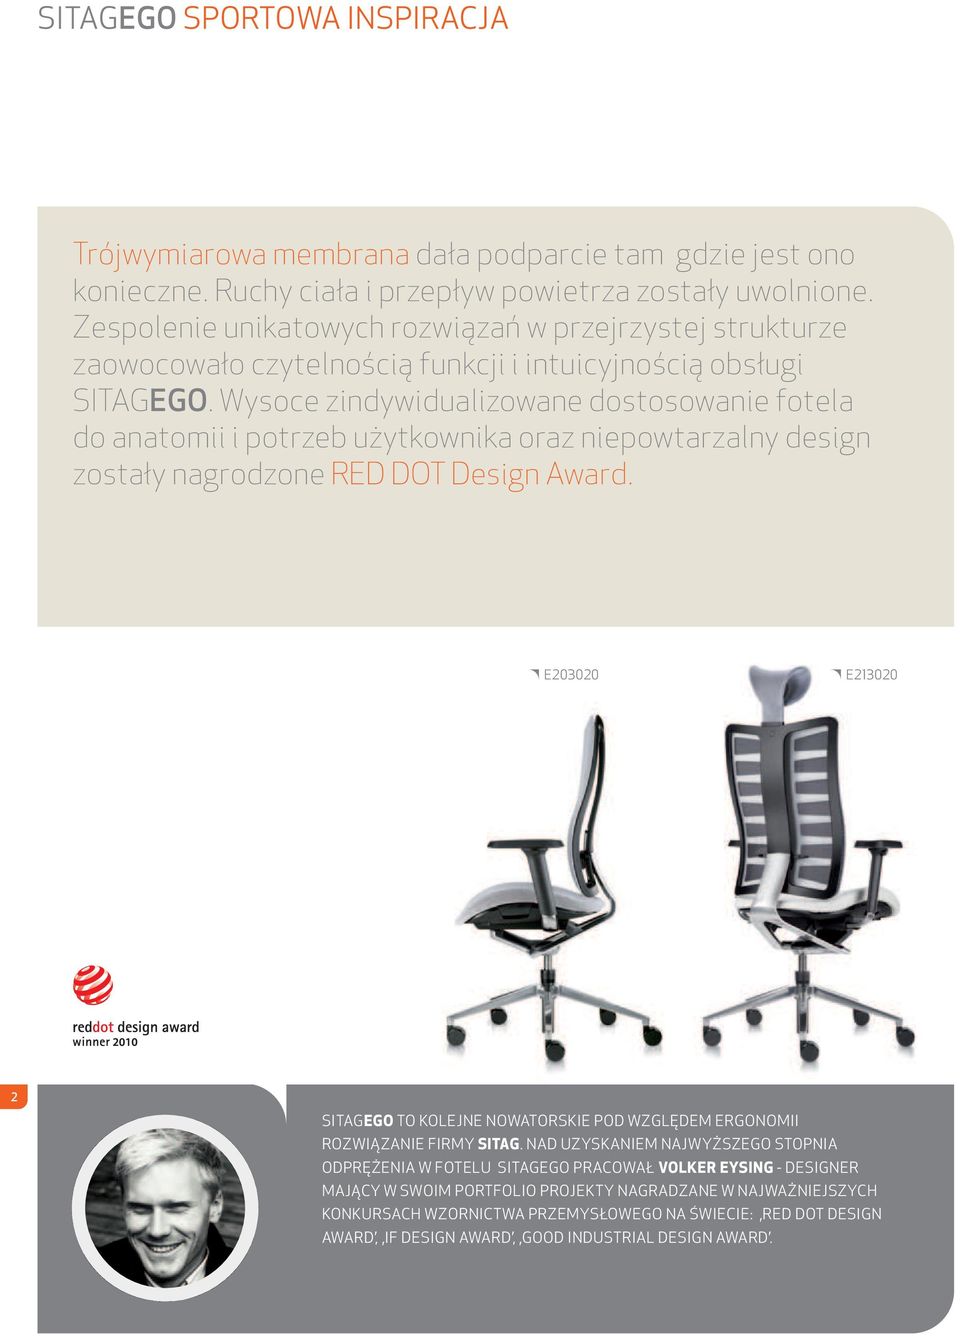 Wysoce zindywidualizowane dostosowanie fotela do anatomii i potrzeb użytkownika oraz niepowtarzalny design zostały nagrodzone RED DOT Design Award.